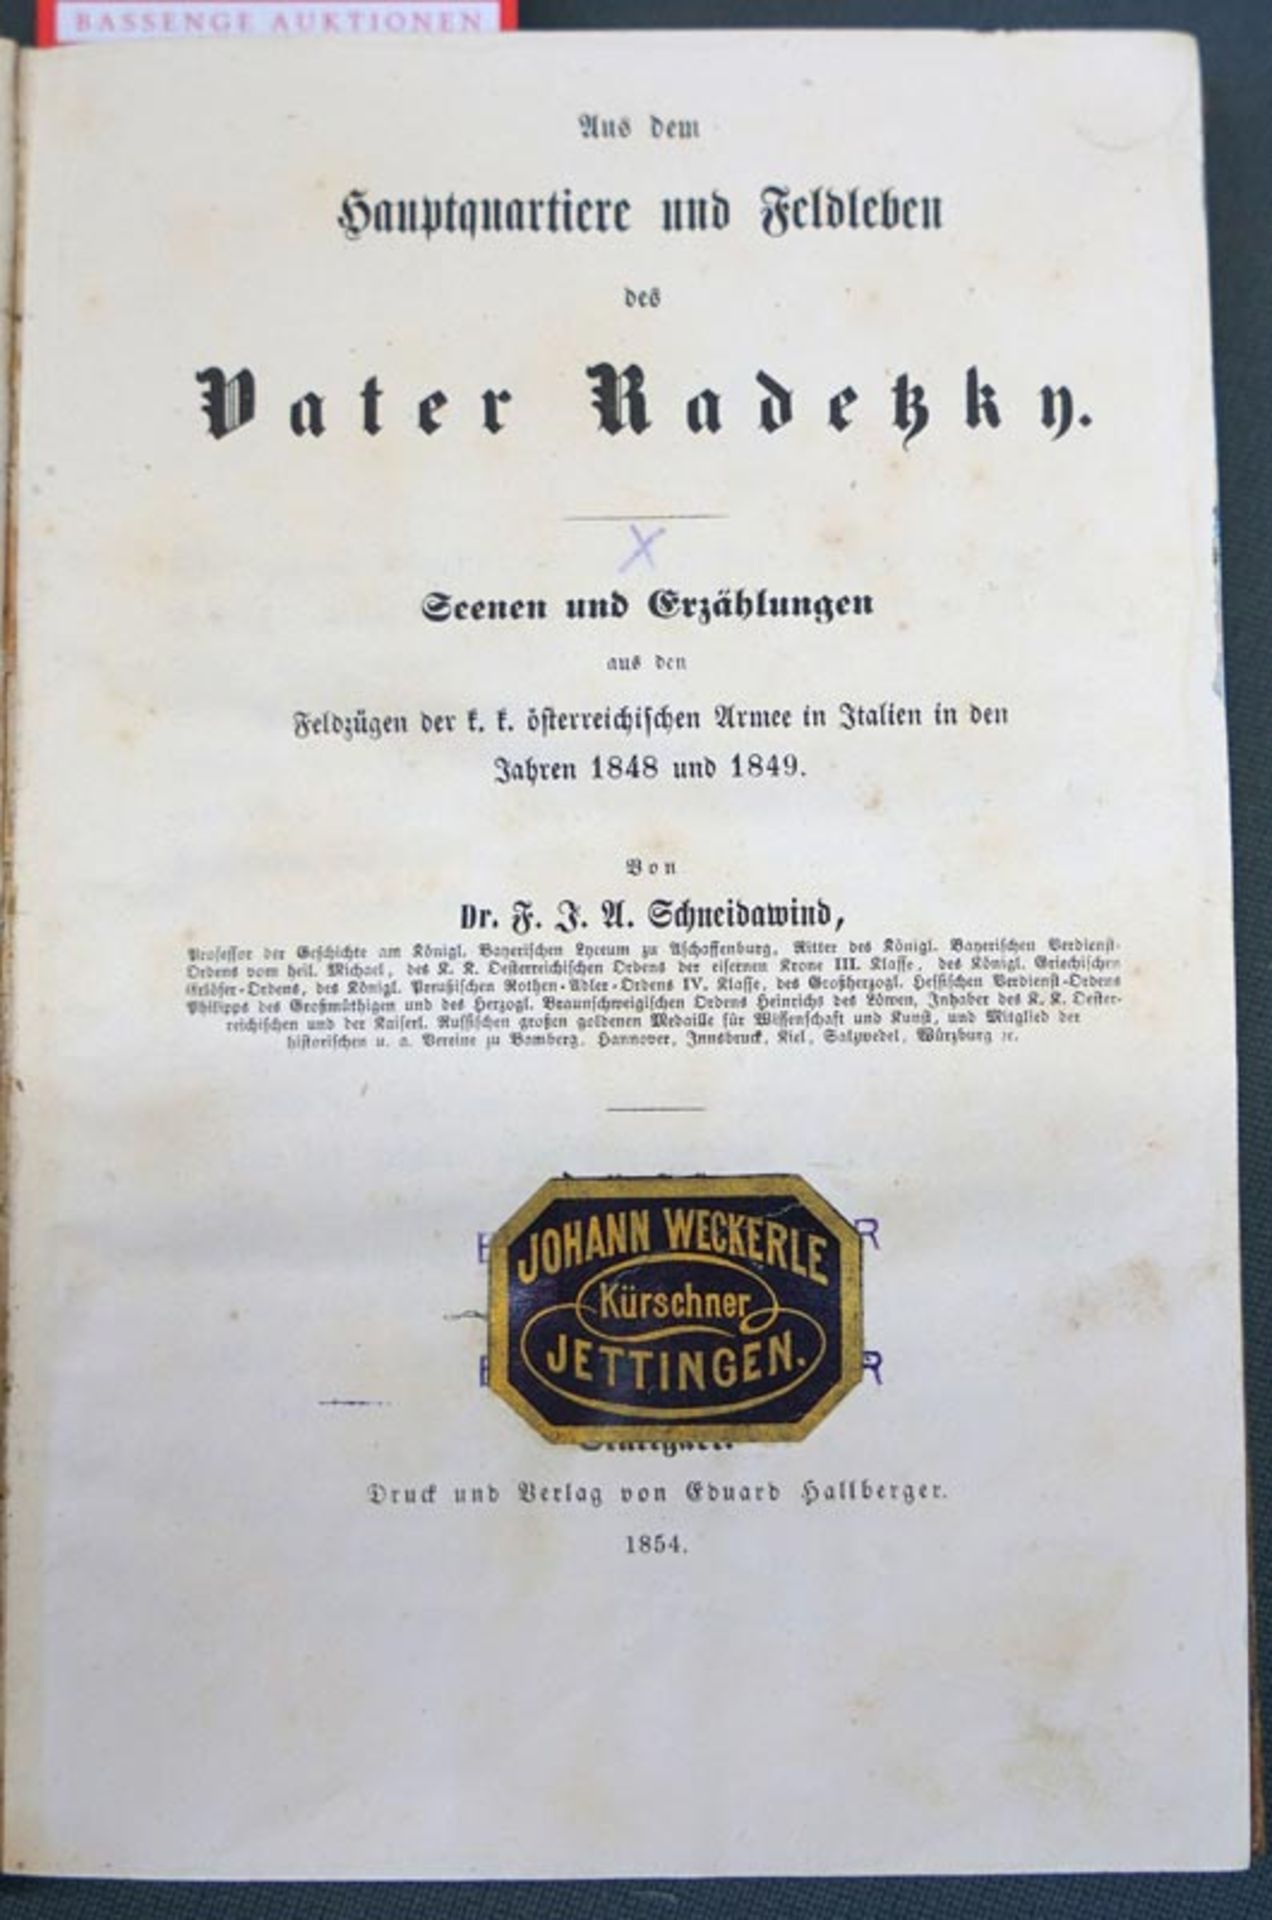 Schneidawind, Franz Josef Adolf: Aus dem Hauptquartiere und Feldleben des Vater Radetzky